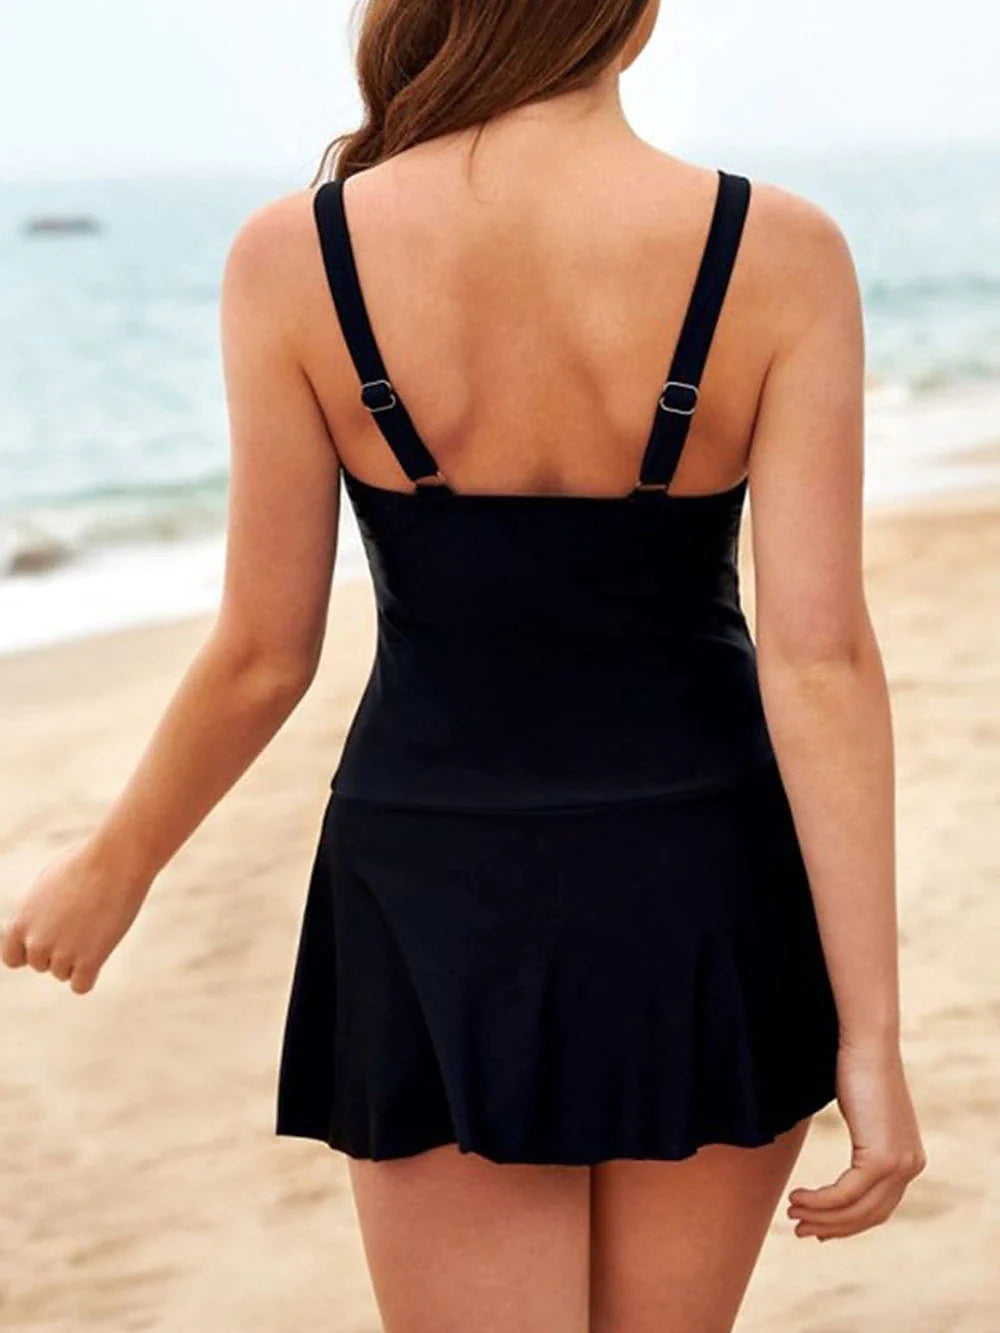 Women's Swimwear Tankini 2 Piece Swimsuit 2 Piece Solid Color Black Tank Top Bathing Suits Beach Wear Summer S M L